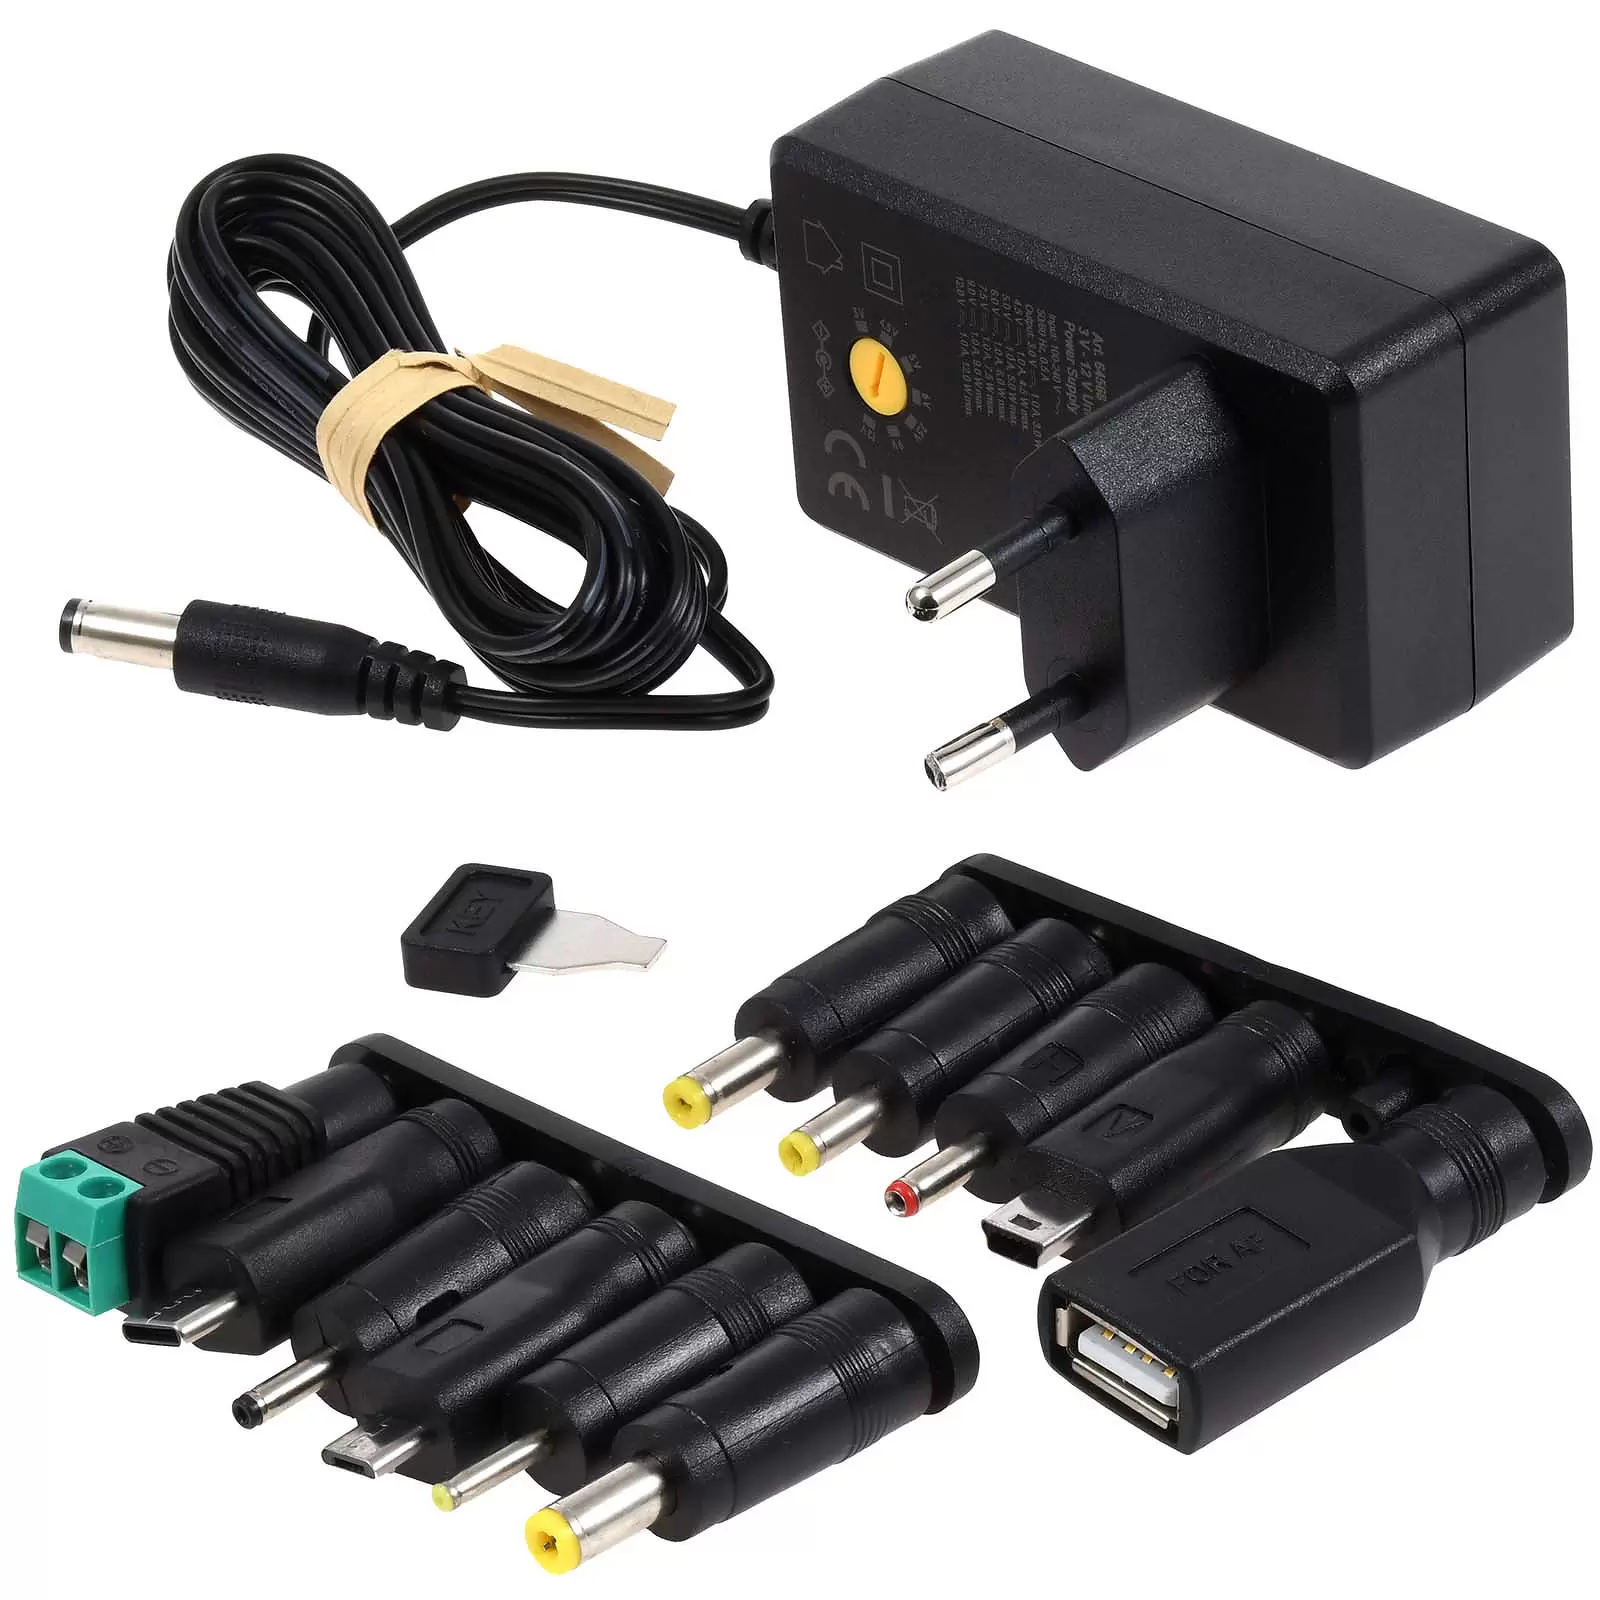 Universal-Netzteil inkl. 1 USB-C, USB-A, Micro-US B, Mini-USB- und 7 DC Adapter 3V-12V max. 12W